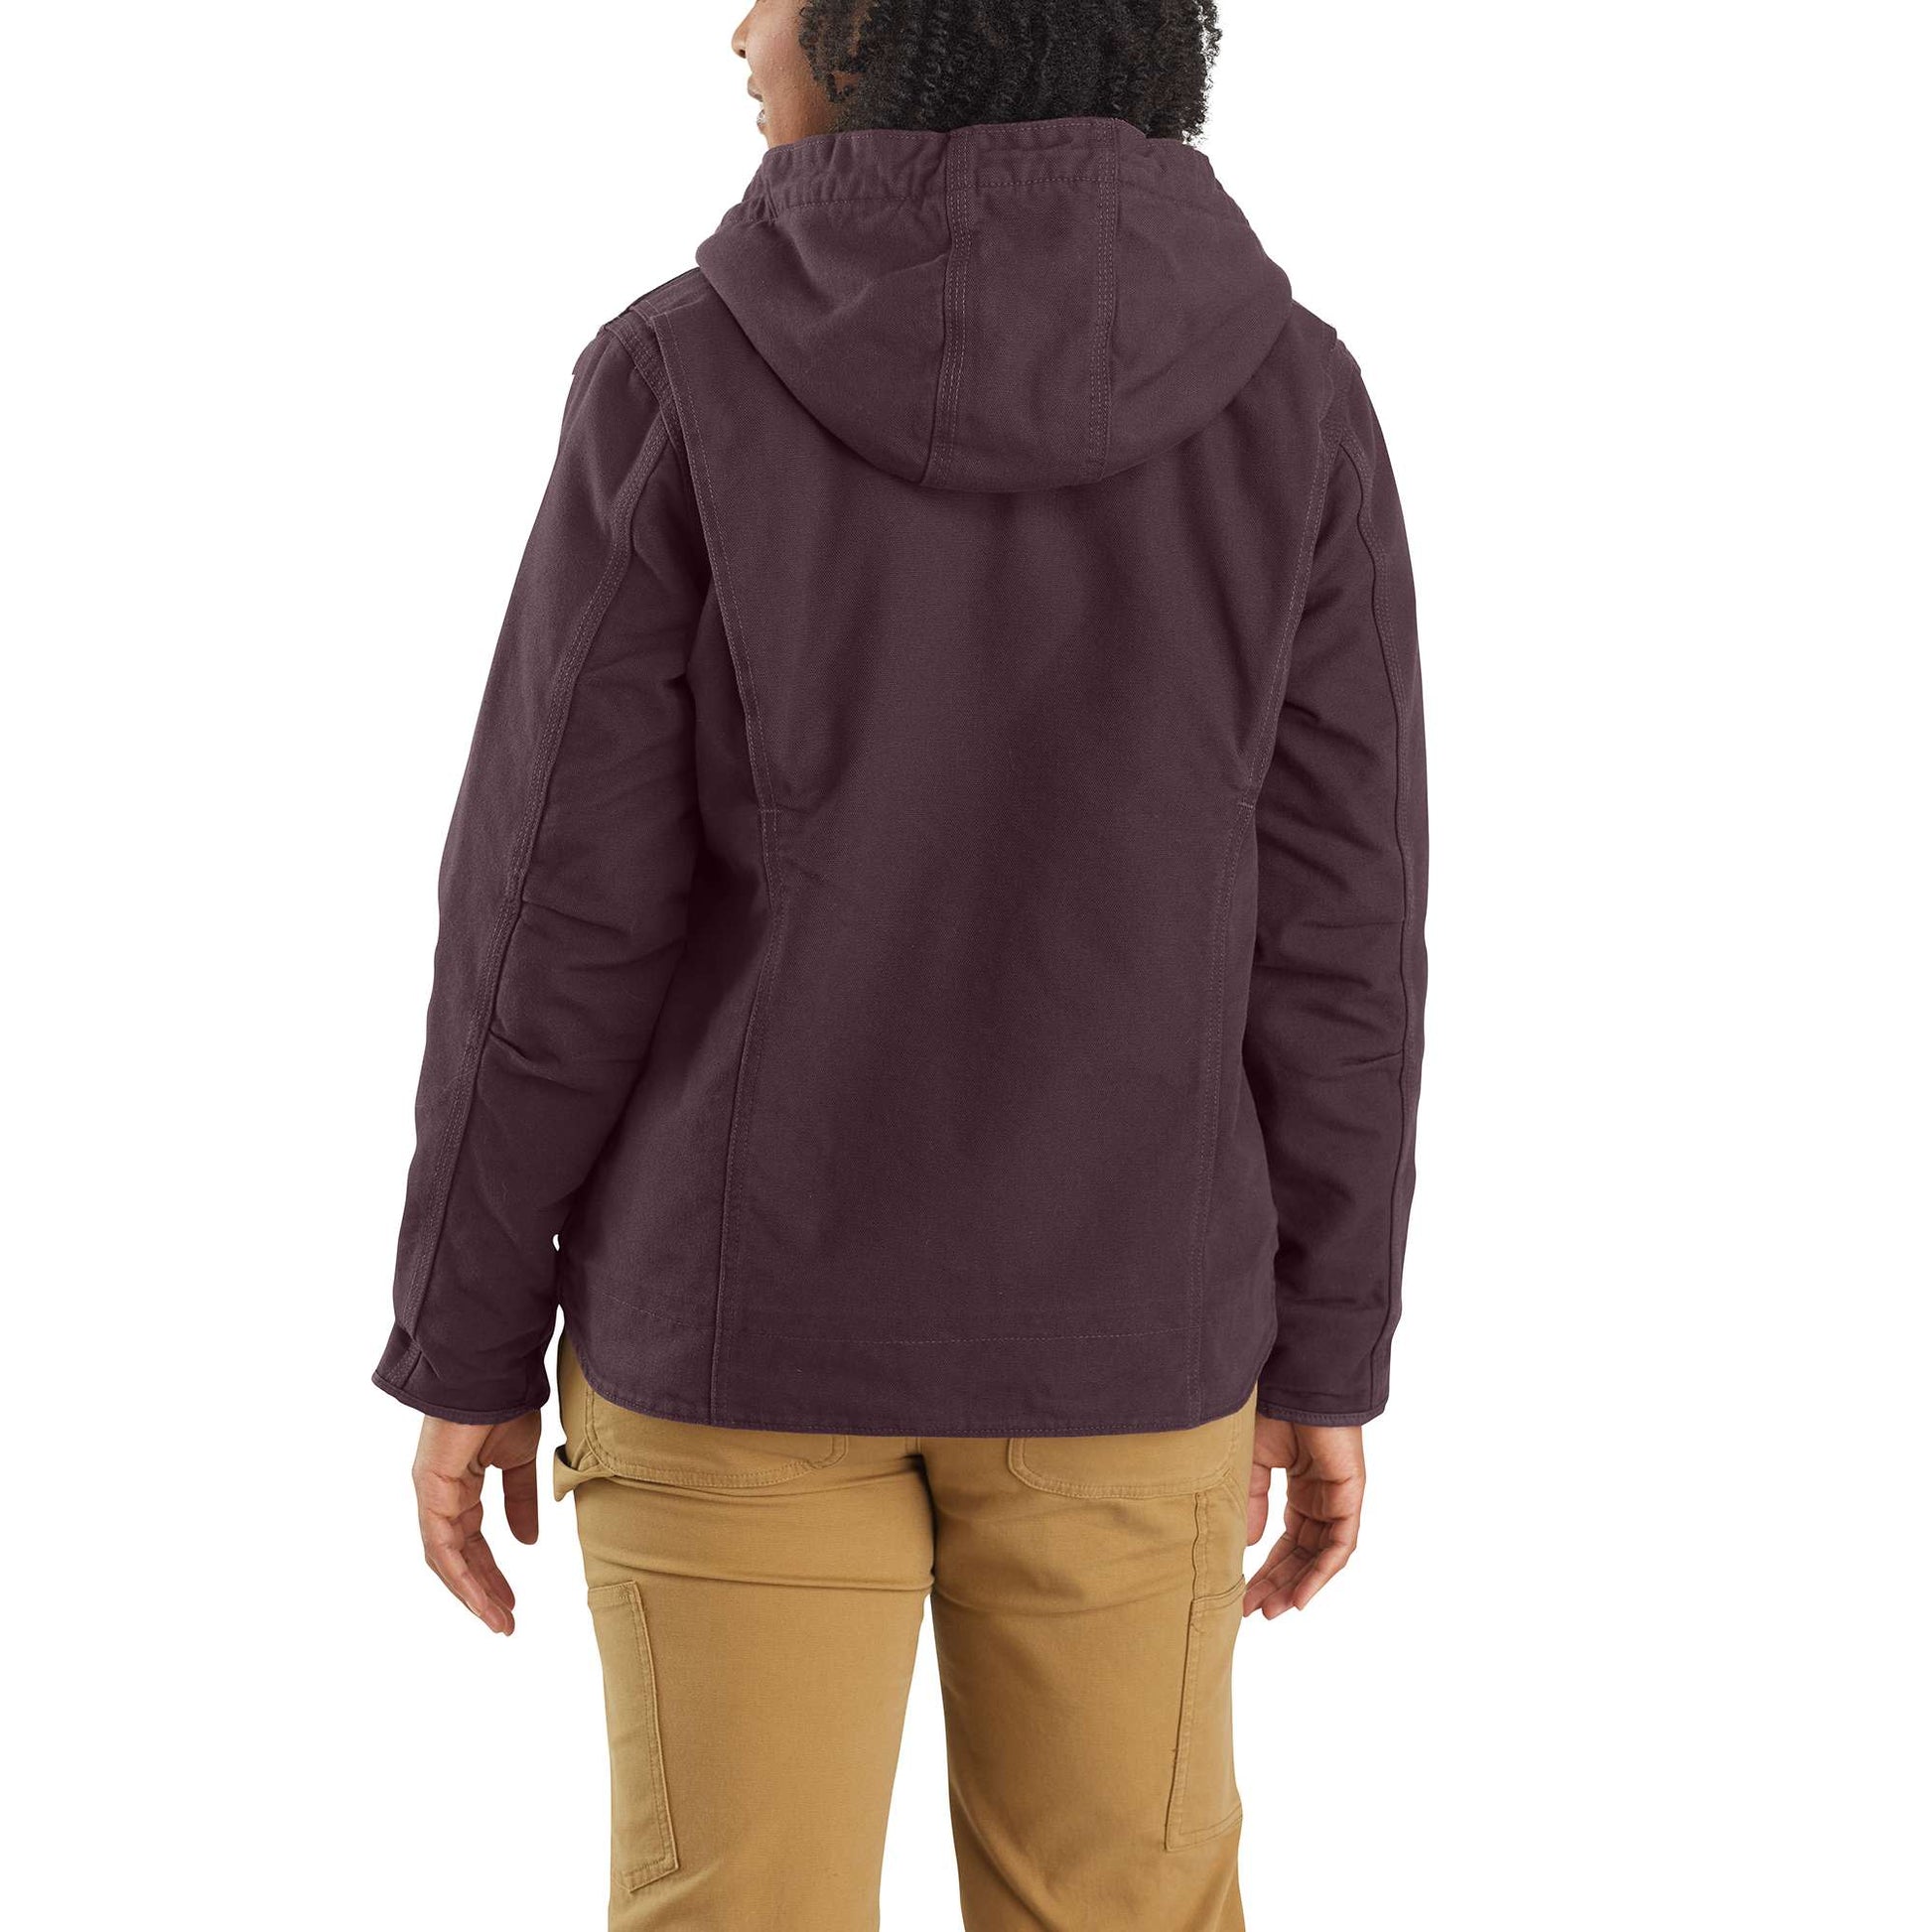 Women's Loose Fit Washed Duck Sherpa Lined Jacket - 3 Warmest